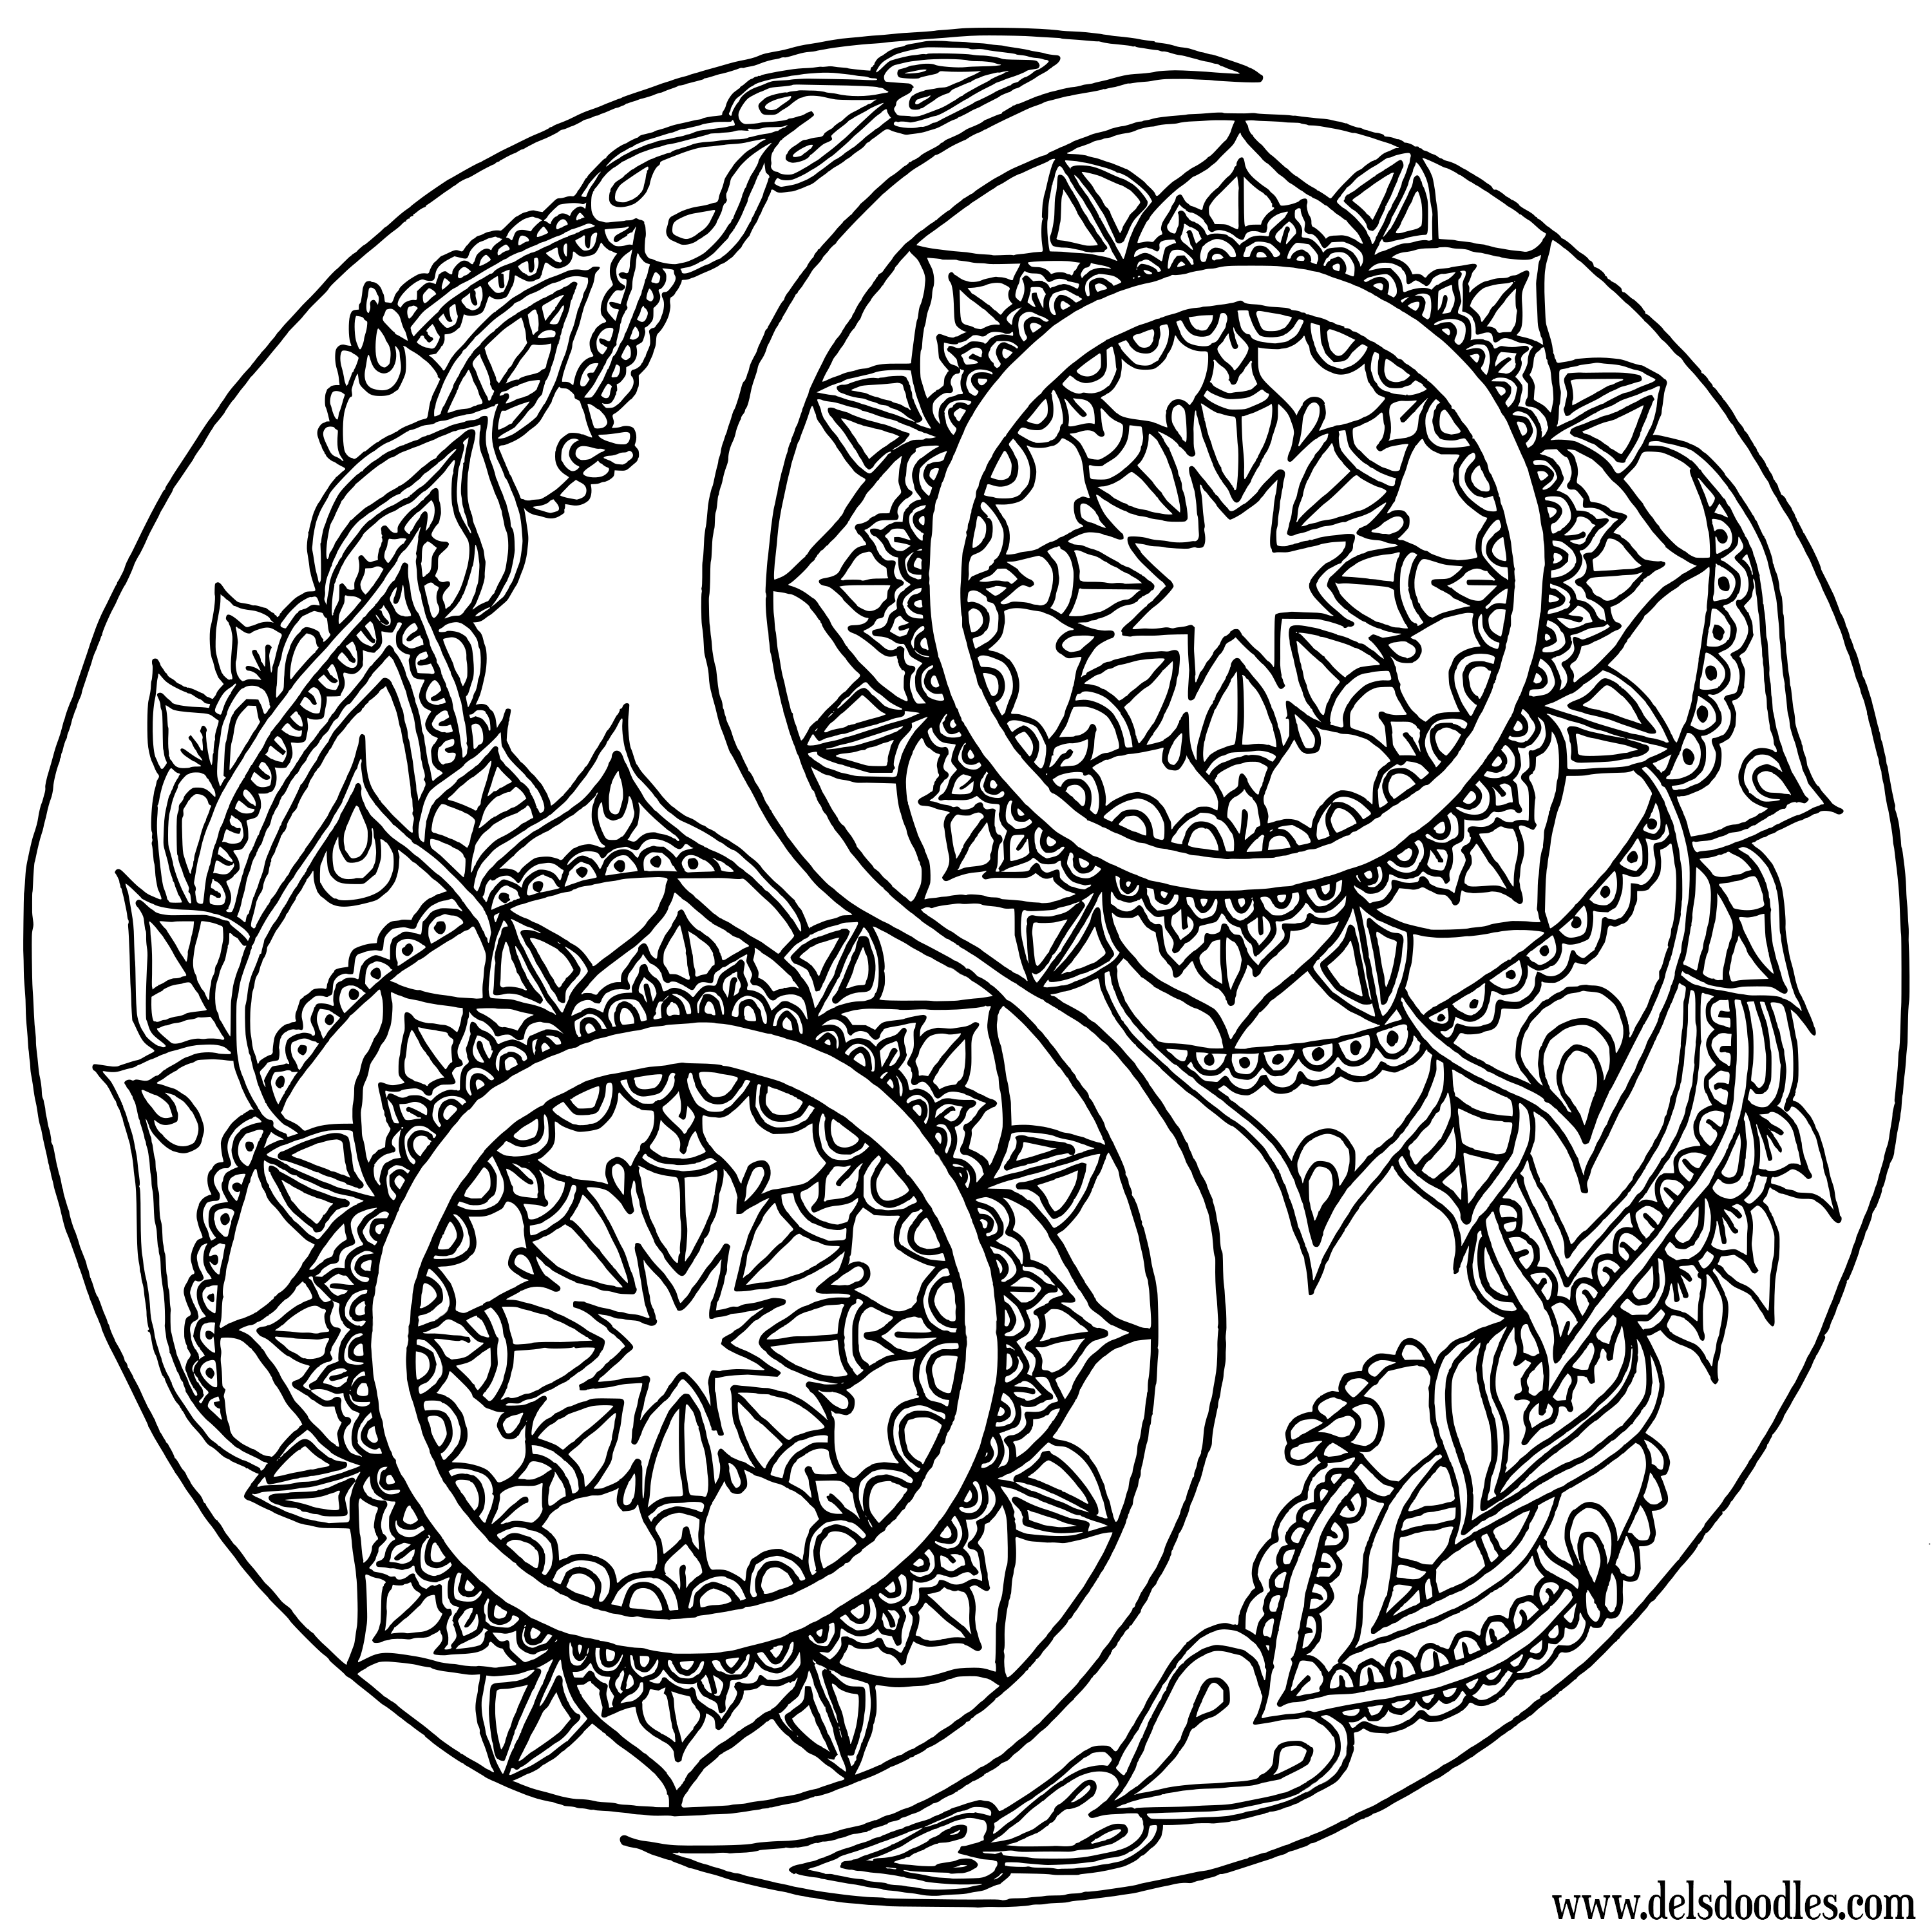 Mandala Yin Yang - 12 feutres inclus - 32 x 32 cm - à colorier Colorvelvet  - Dessin et coloriage adulte - Creavea